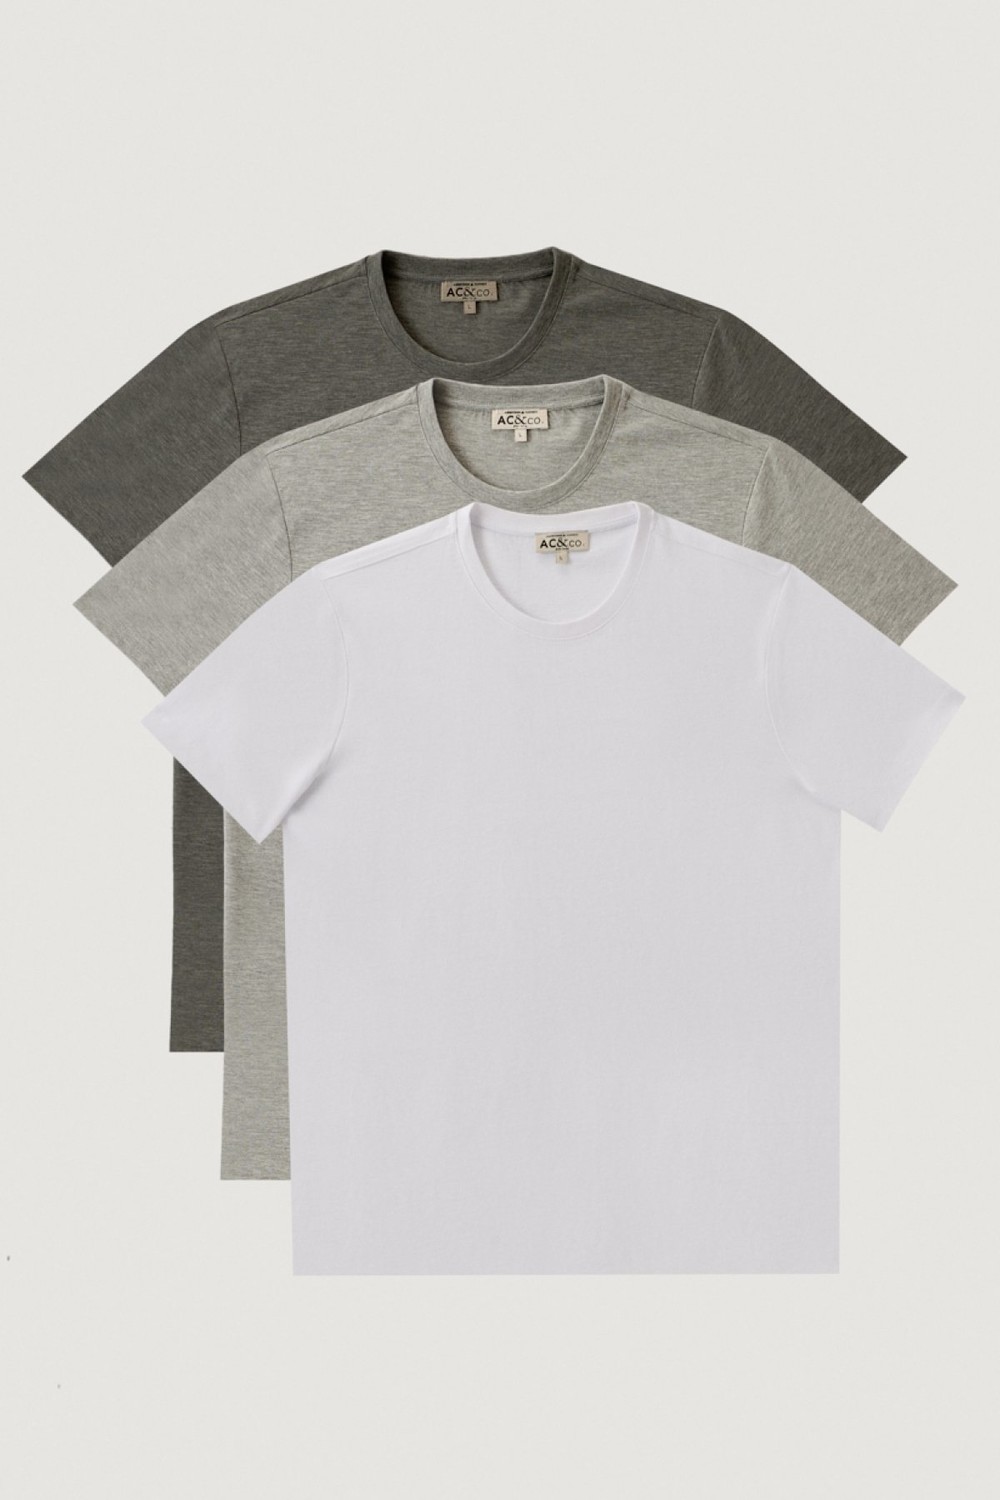 AC&Co / Altınyıldız Classics Men's White-gray Melange-grey Slim Fit Slim-Fit Cut Crew Neck 3 Pack 100% Cotton T-Shirt.